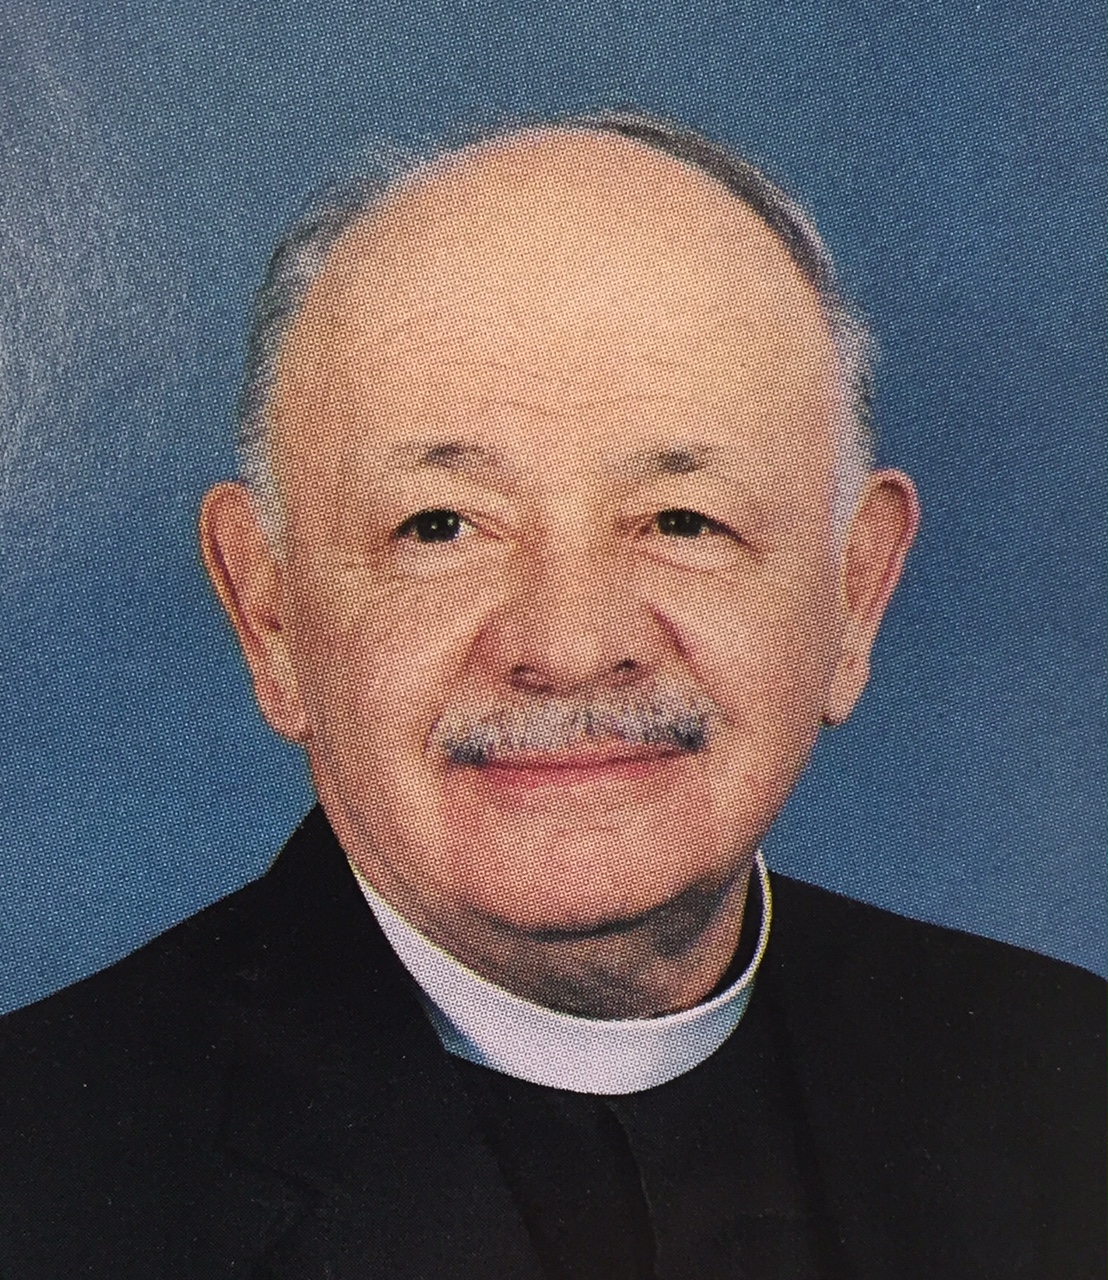 The Rev. Deacon James W. Delaney